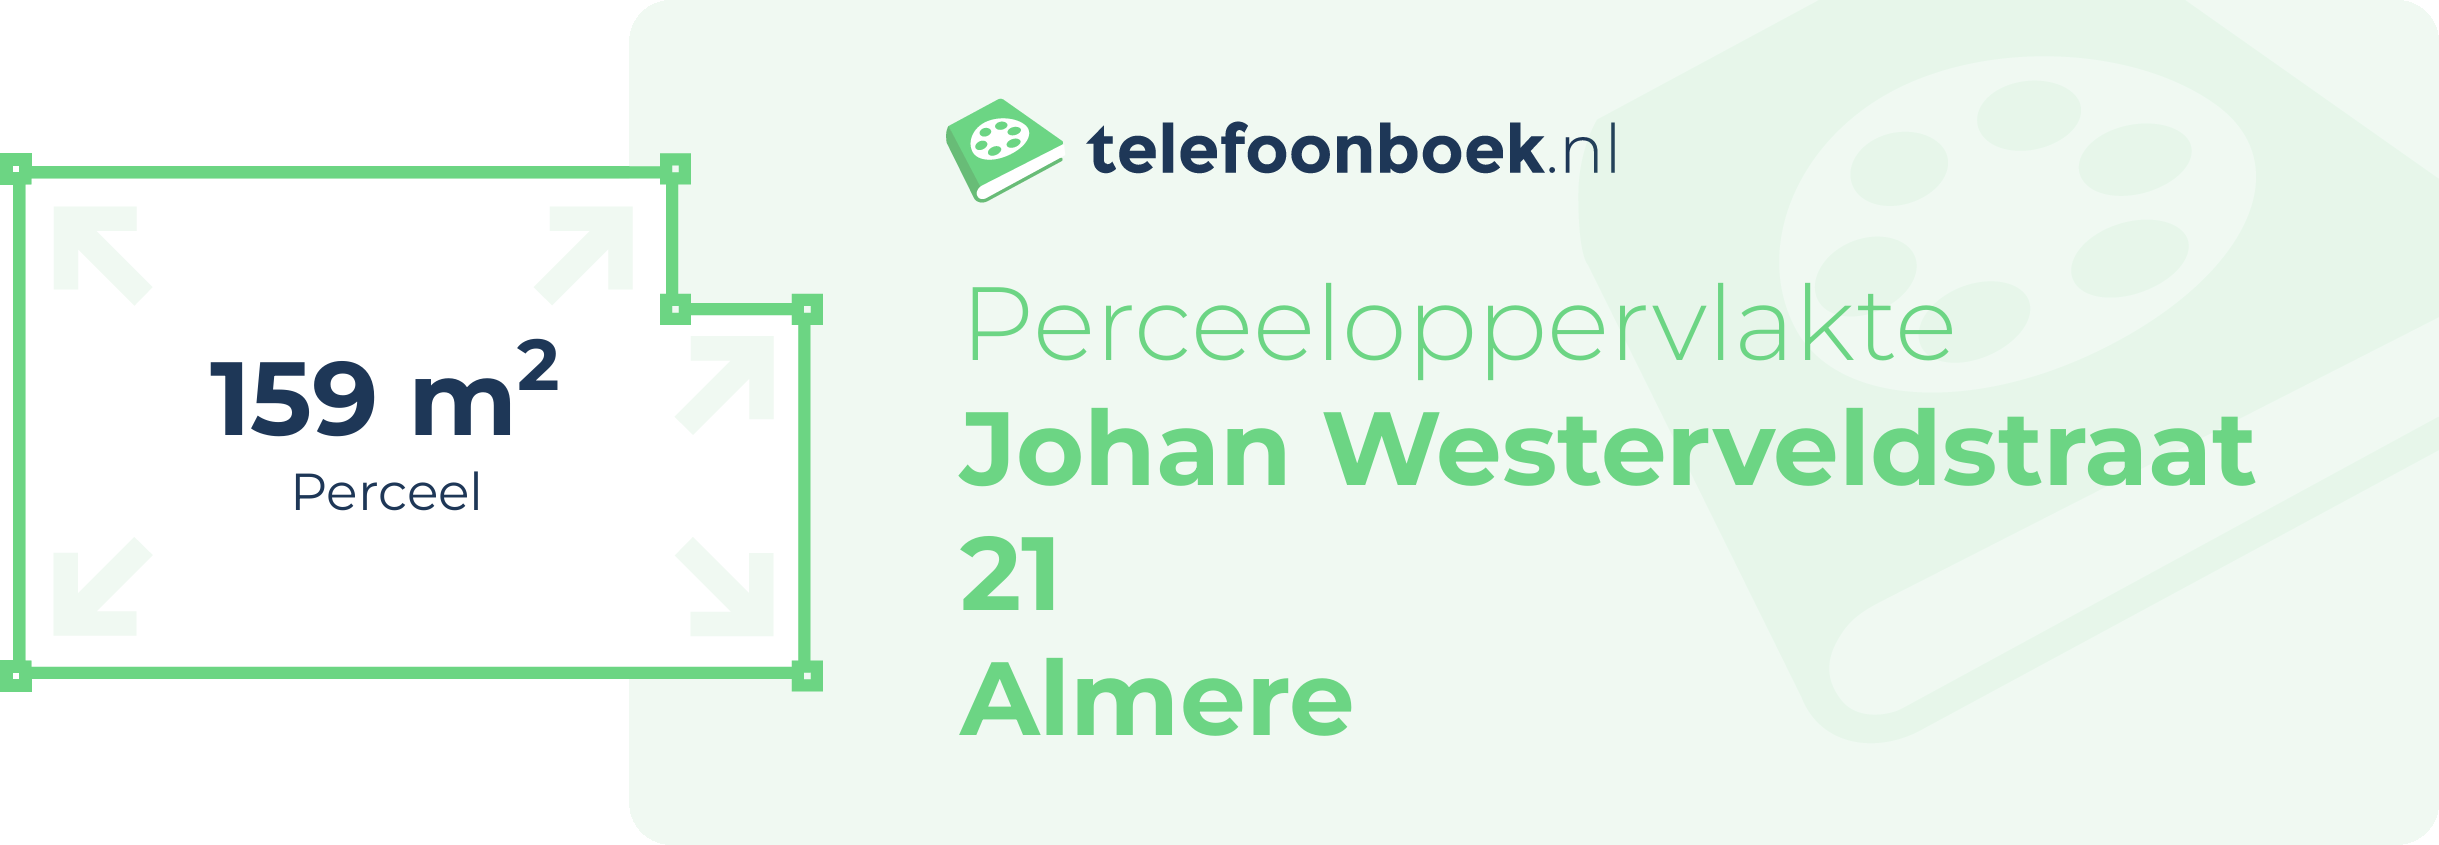 Perceeloppervlakte Johan Westerveldstraat 21 Almere